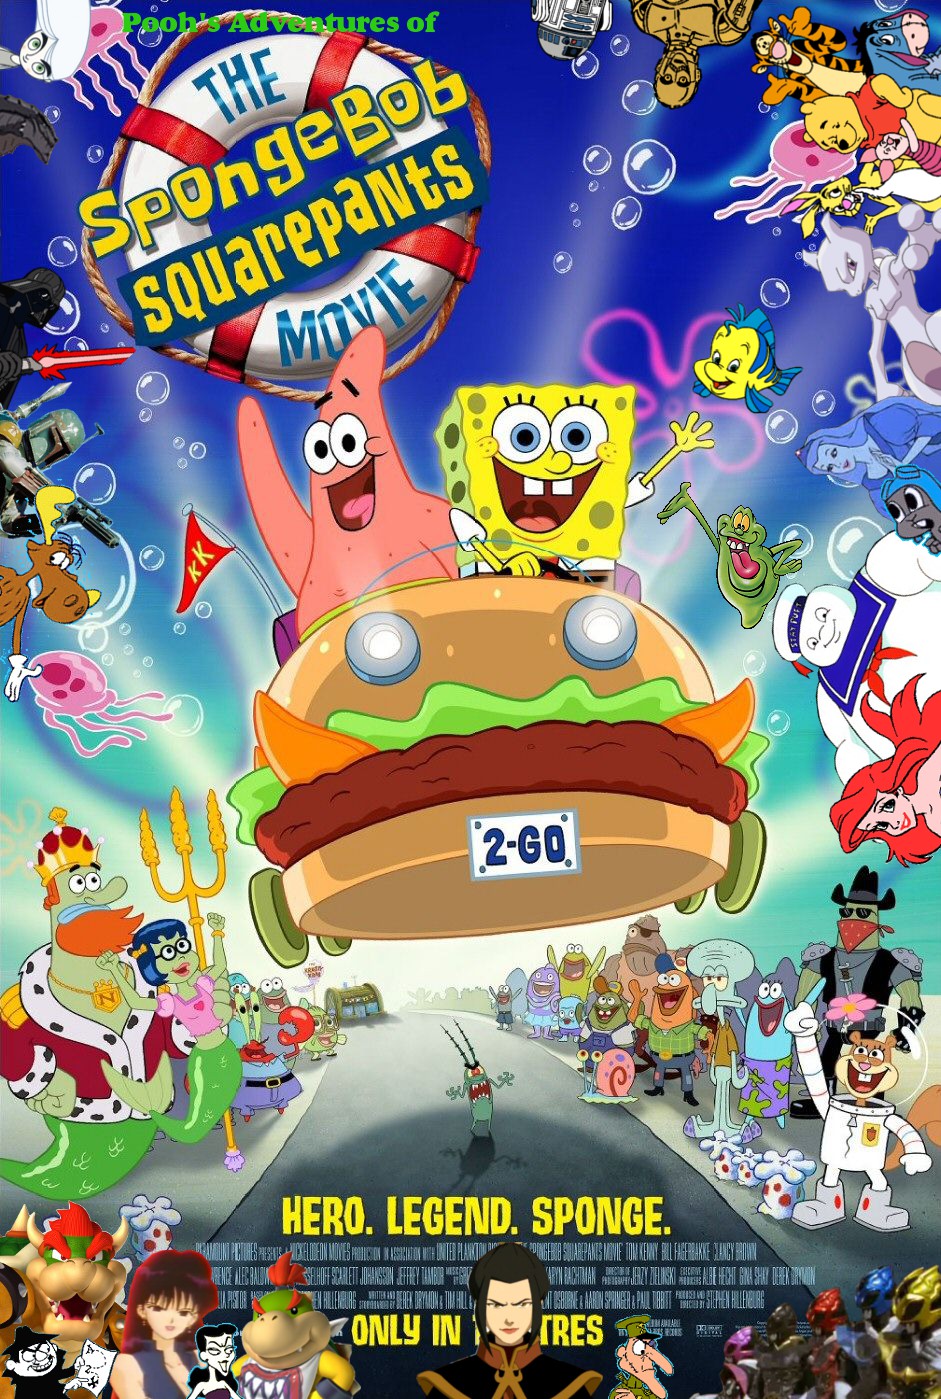 Unduh 740 Koleksi Gambar Film Spongebob Squarepants  Gratis